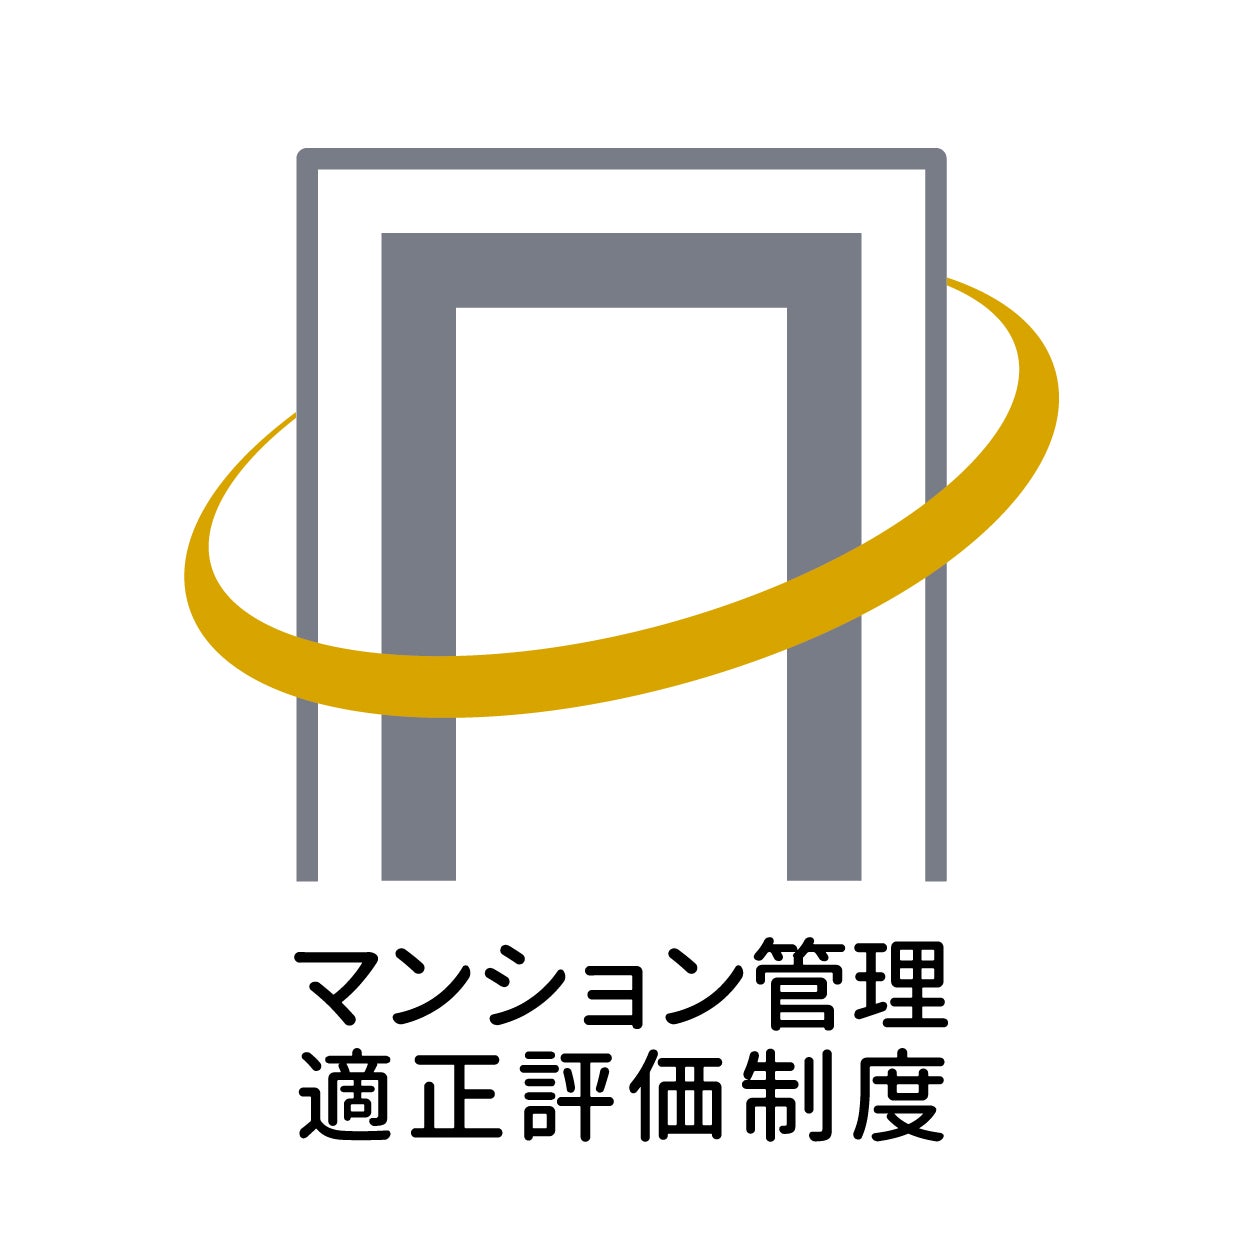 オルタナティブ投資プラットフォーム「SAMURAI FUND」、『【毎月分配】国内向け短期ブリッジローン#1』を公開